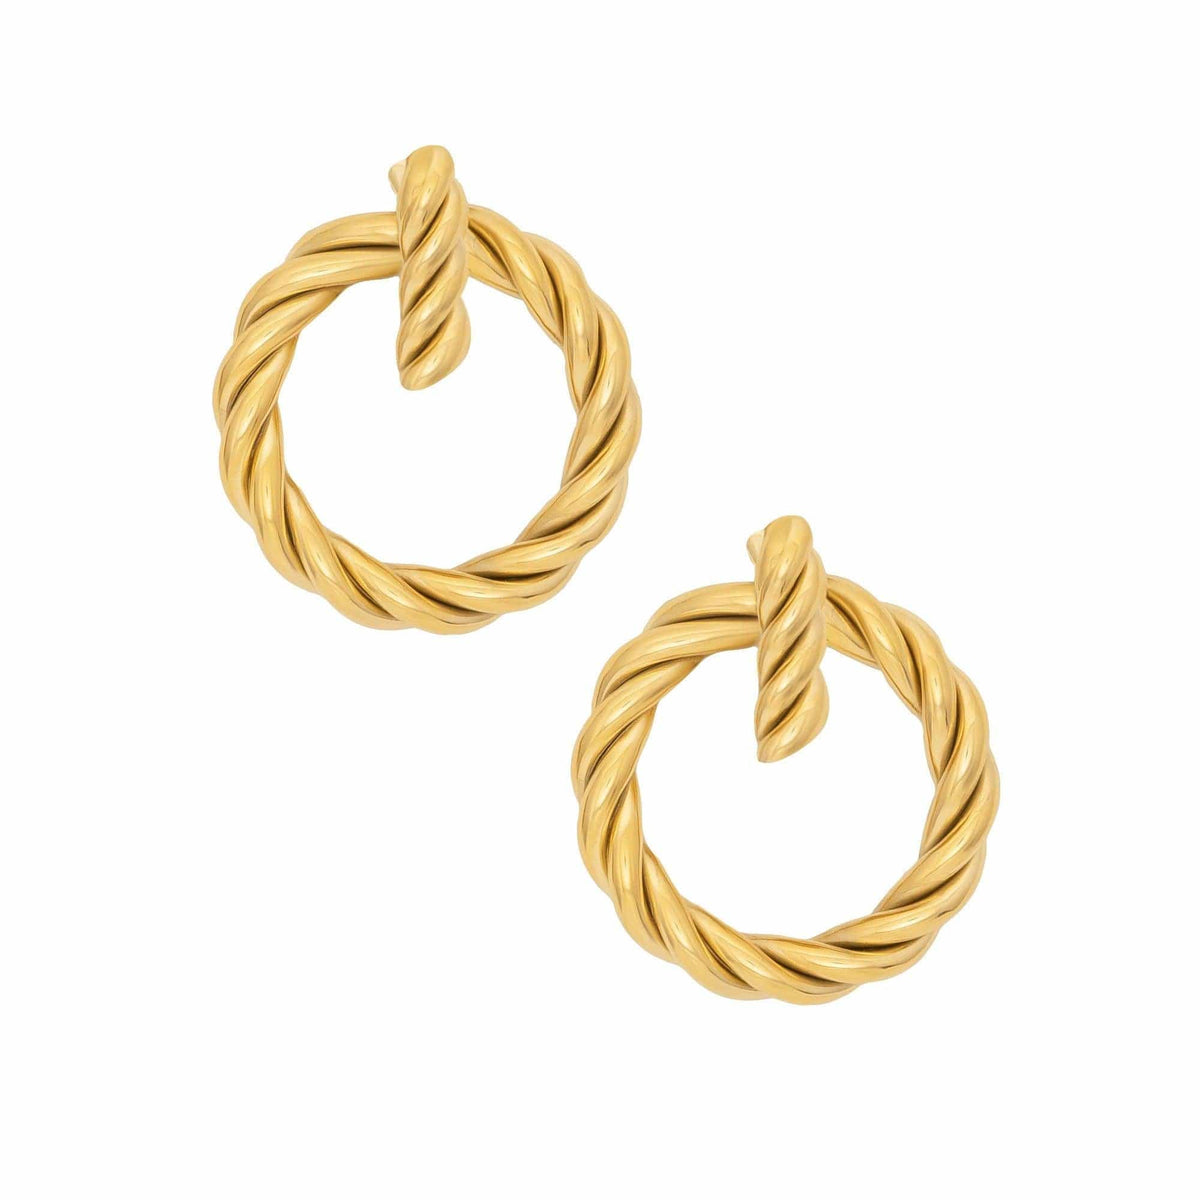 BohoMoon Stainless Steel Zoey Hoop Earrings Gold